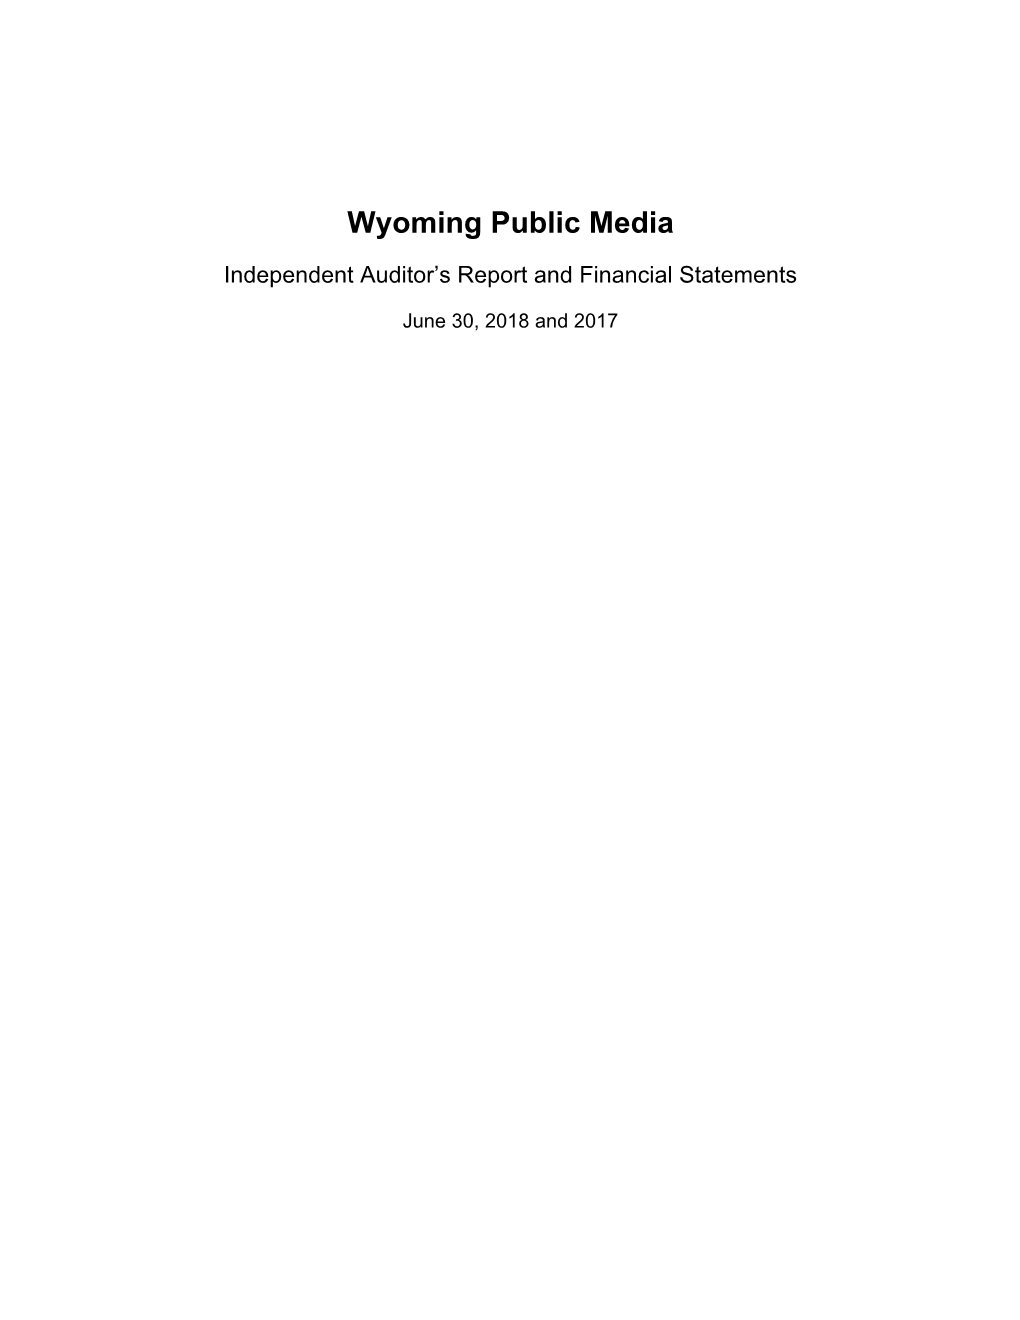 Wyoming Public Media Report 2018